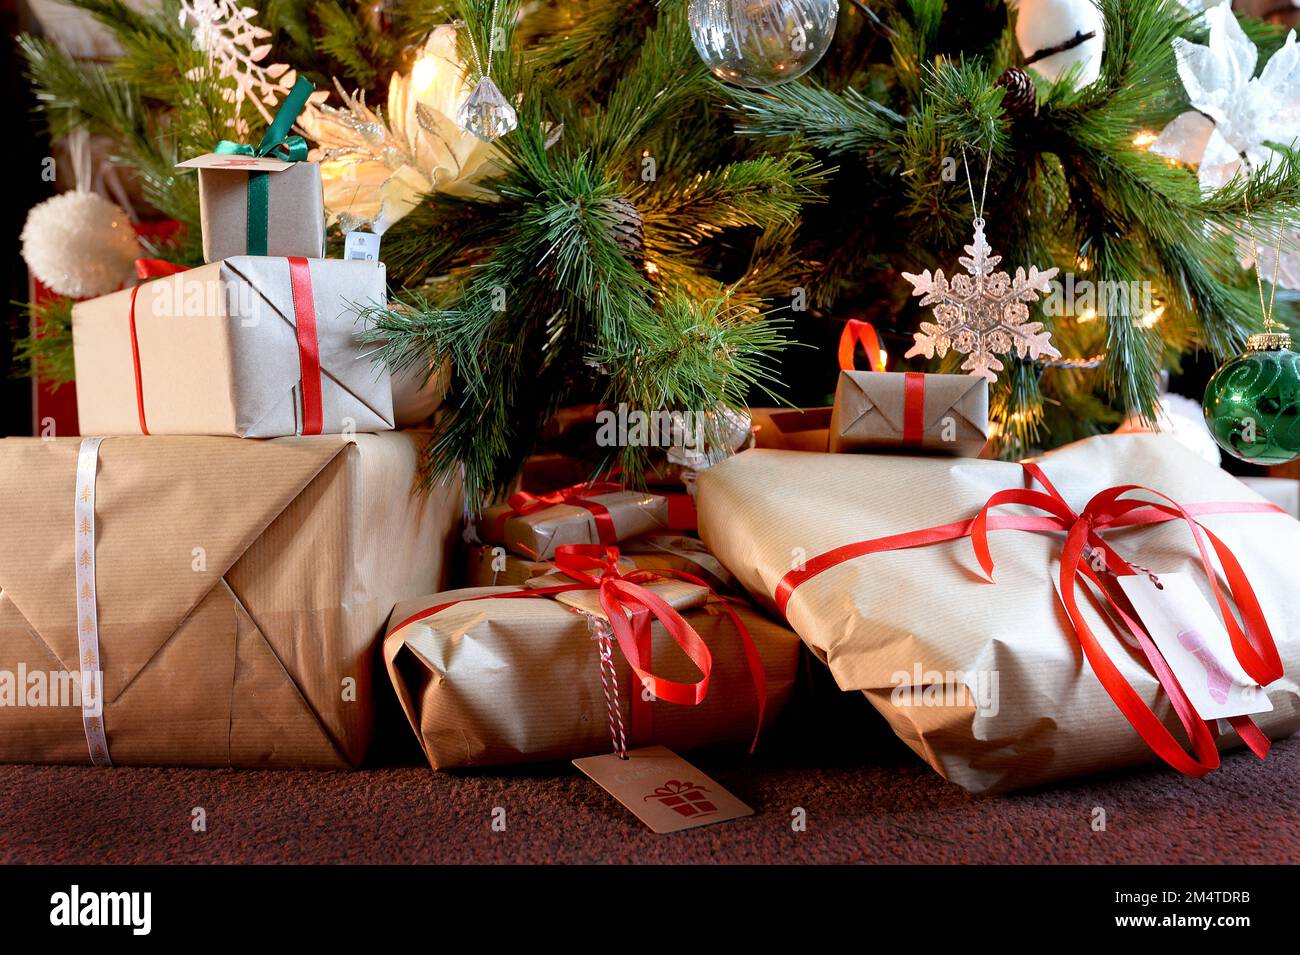 File foto datata 25/12/19 di regali di Natale, sotto un albero di Natale,  come negozi di beneficenza hanno sperimentato un boom di acquirenti alla  ricerca di regali di Natale di seconda mano